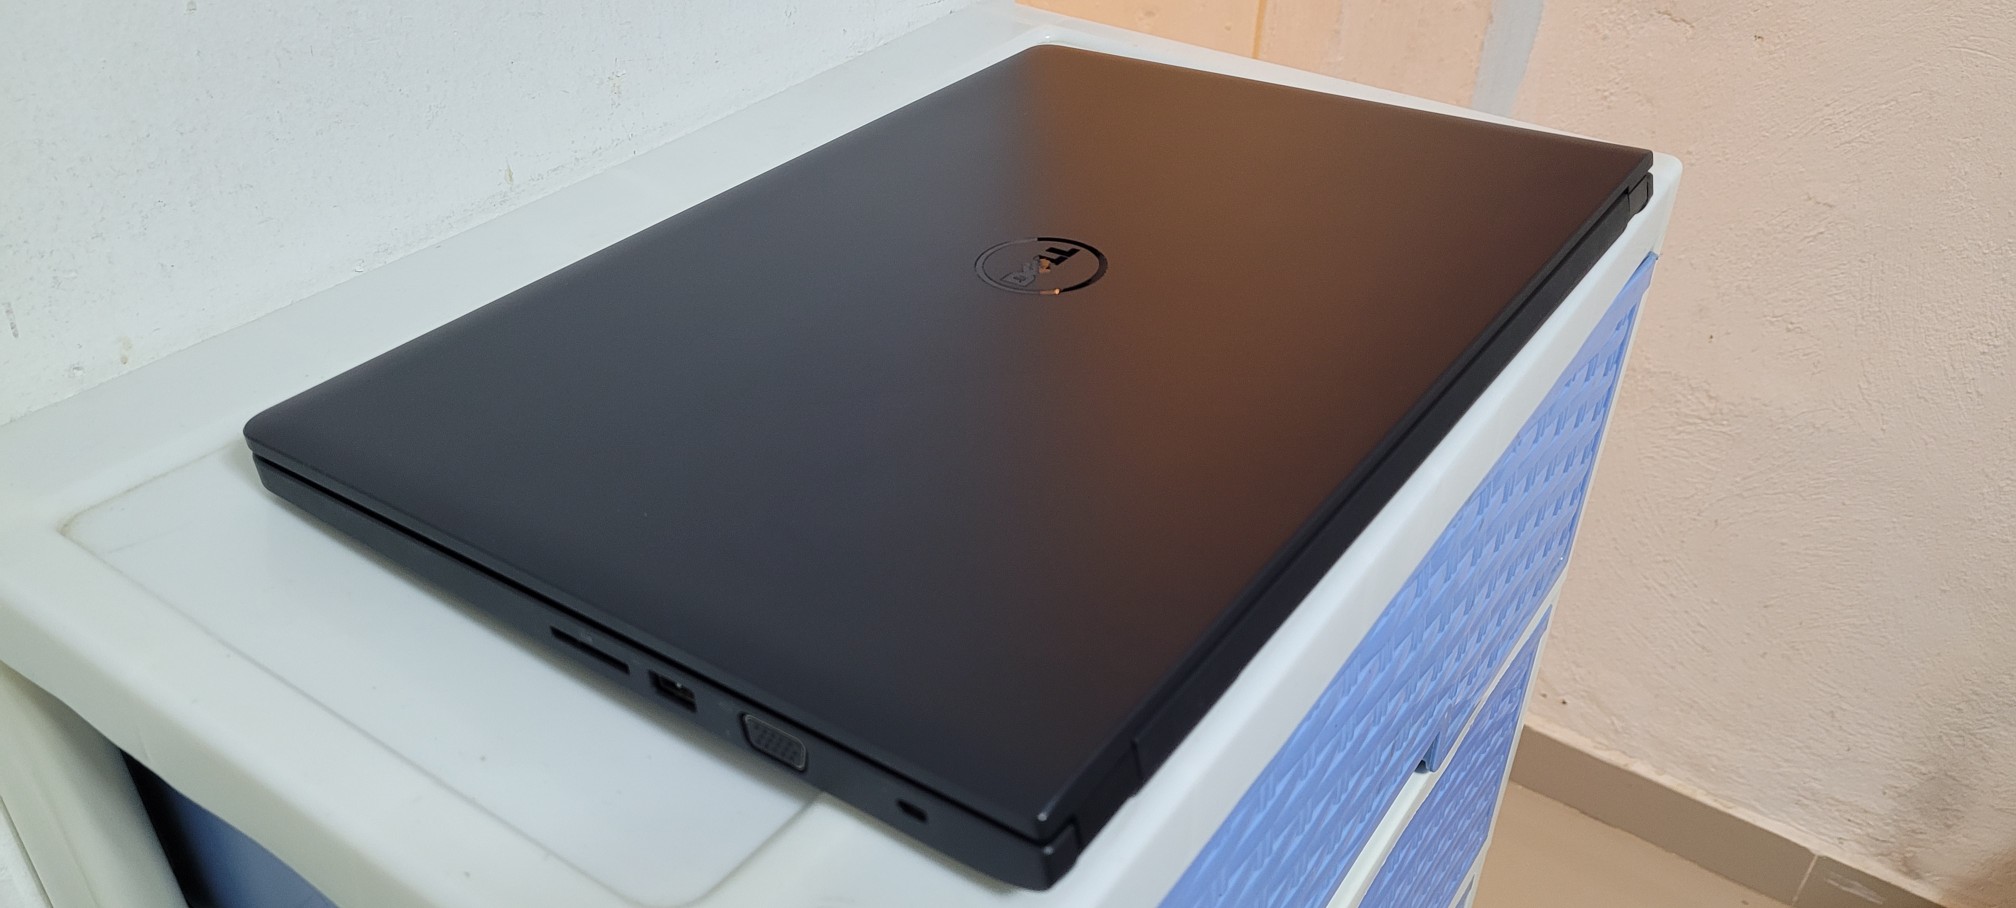 computadoras y laptops - Dell 3590 17 Pulg Core i5 8va Gen Ram 8gb Disco 256gb Solido hdmi 2